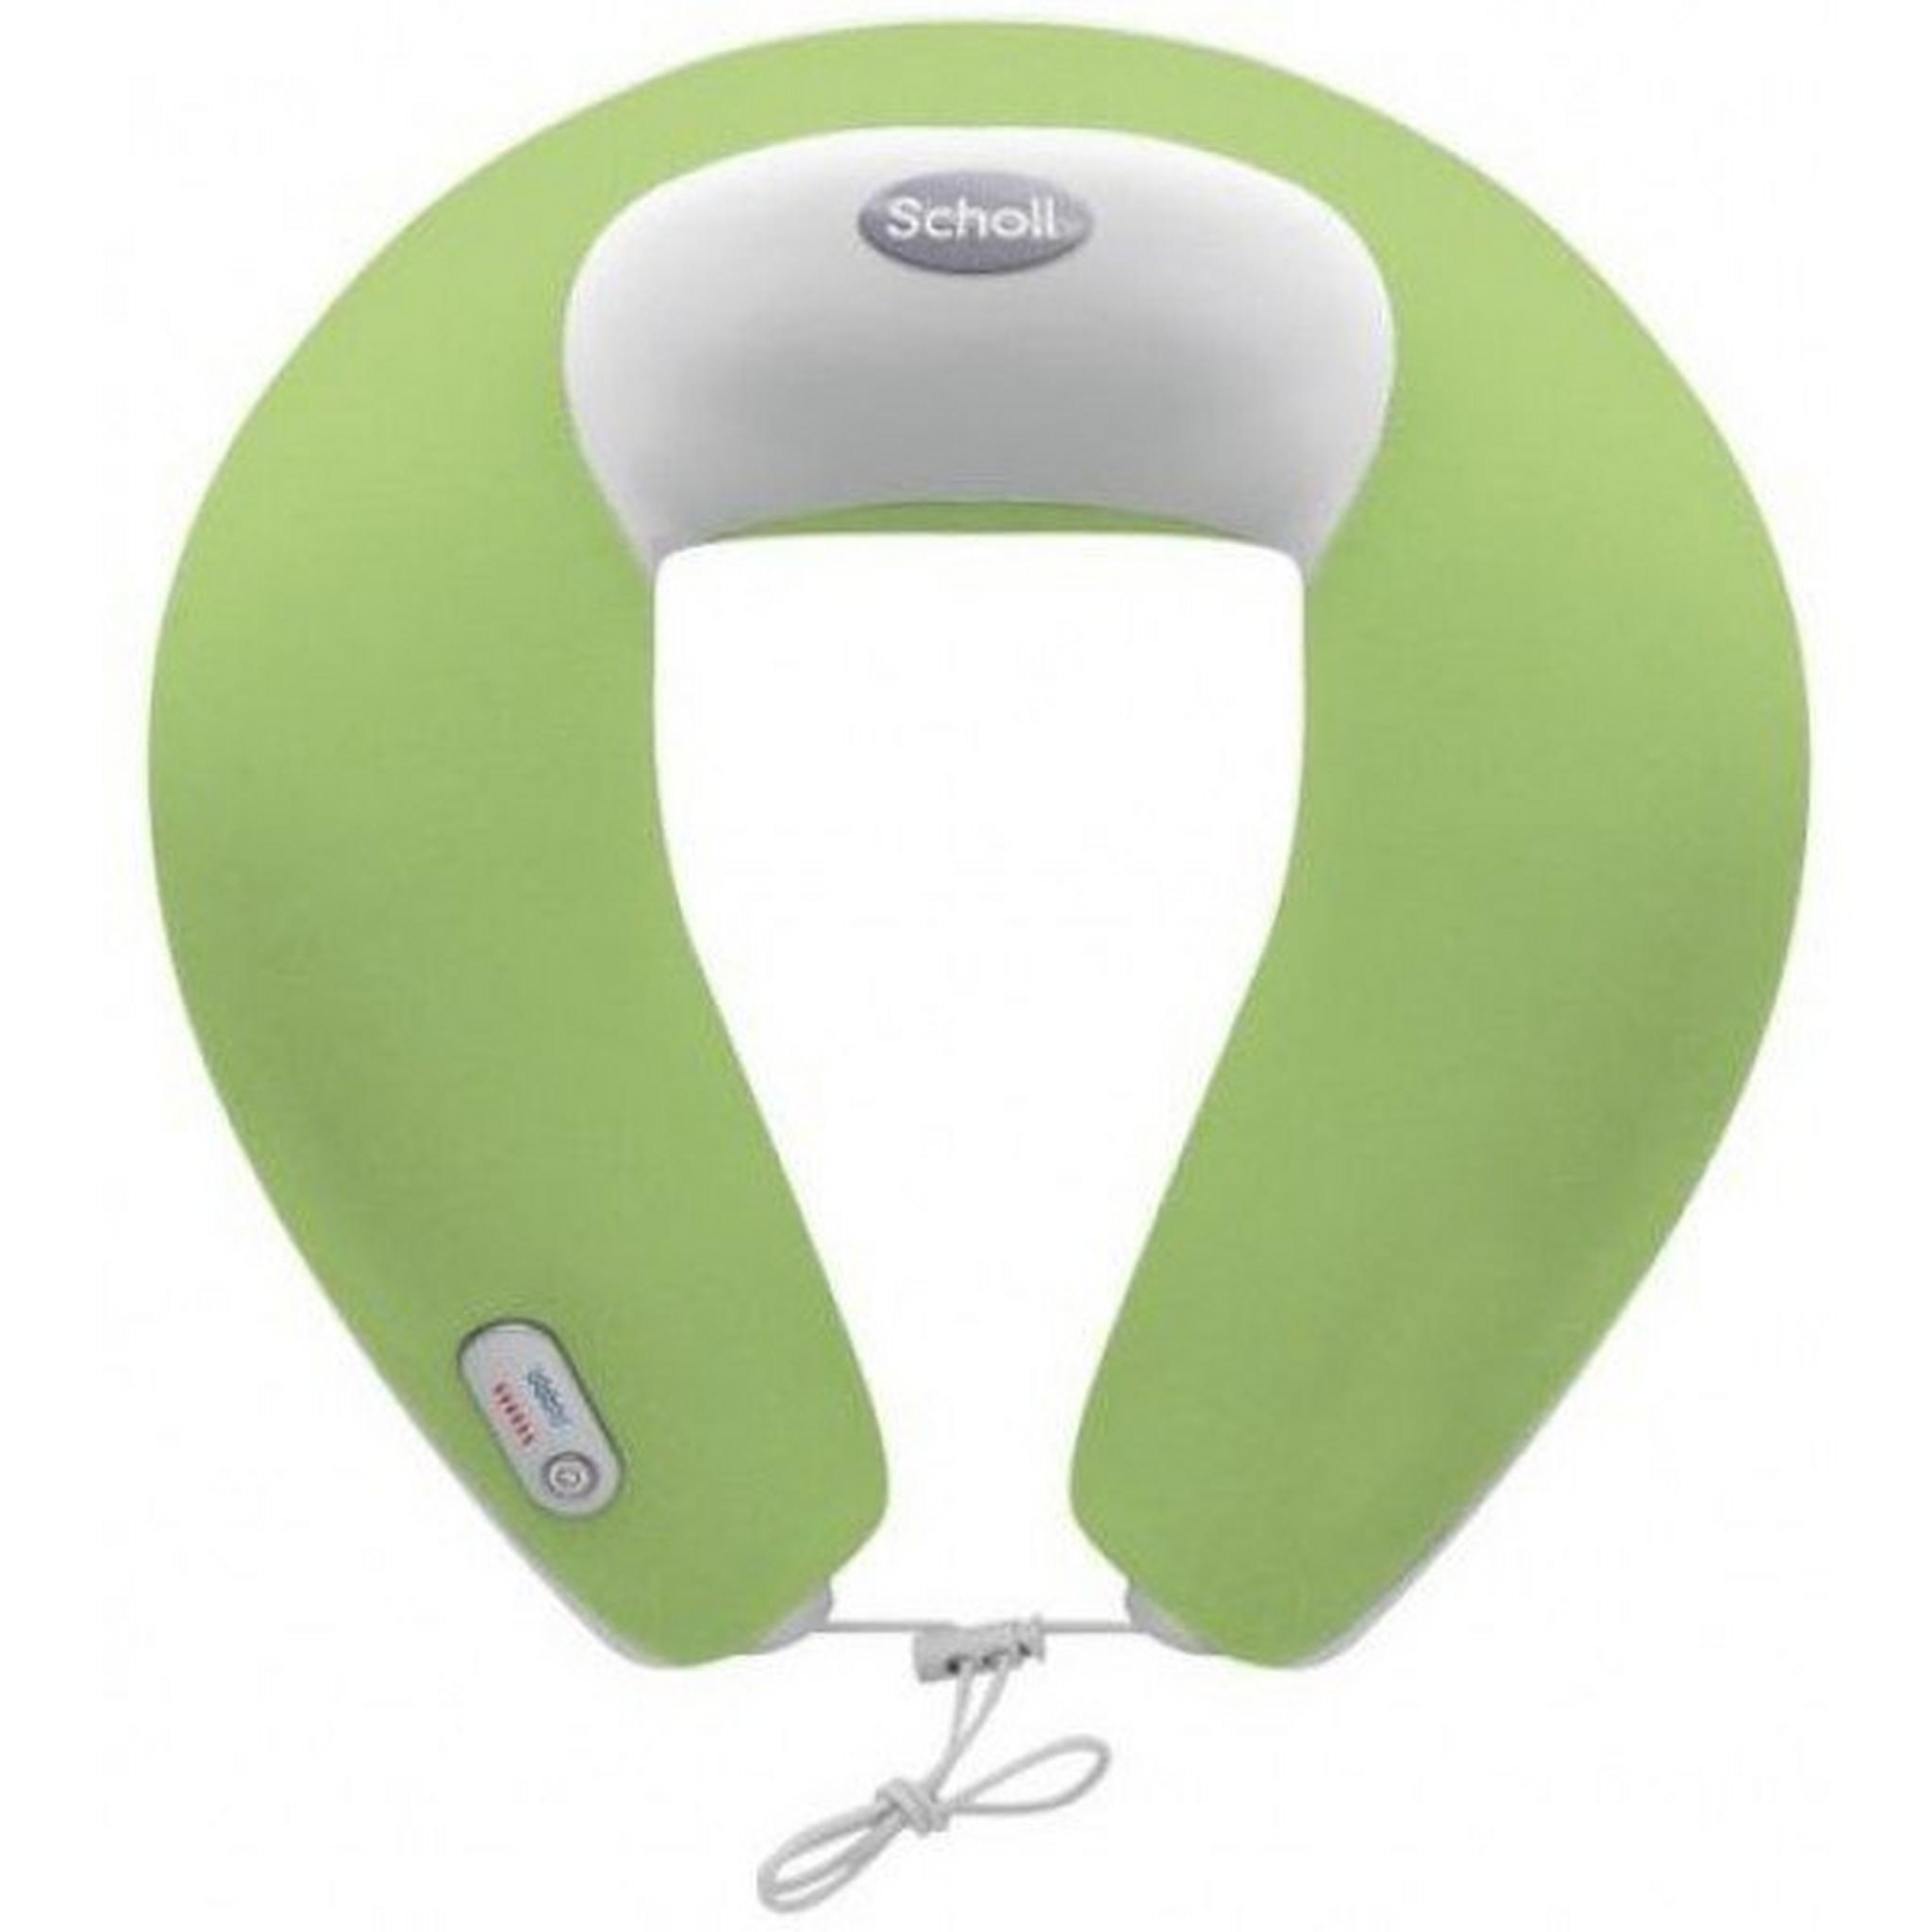 Scholl Vibrating Neck Massager (DRMA7597GUK) - Green